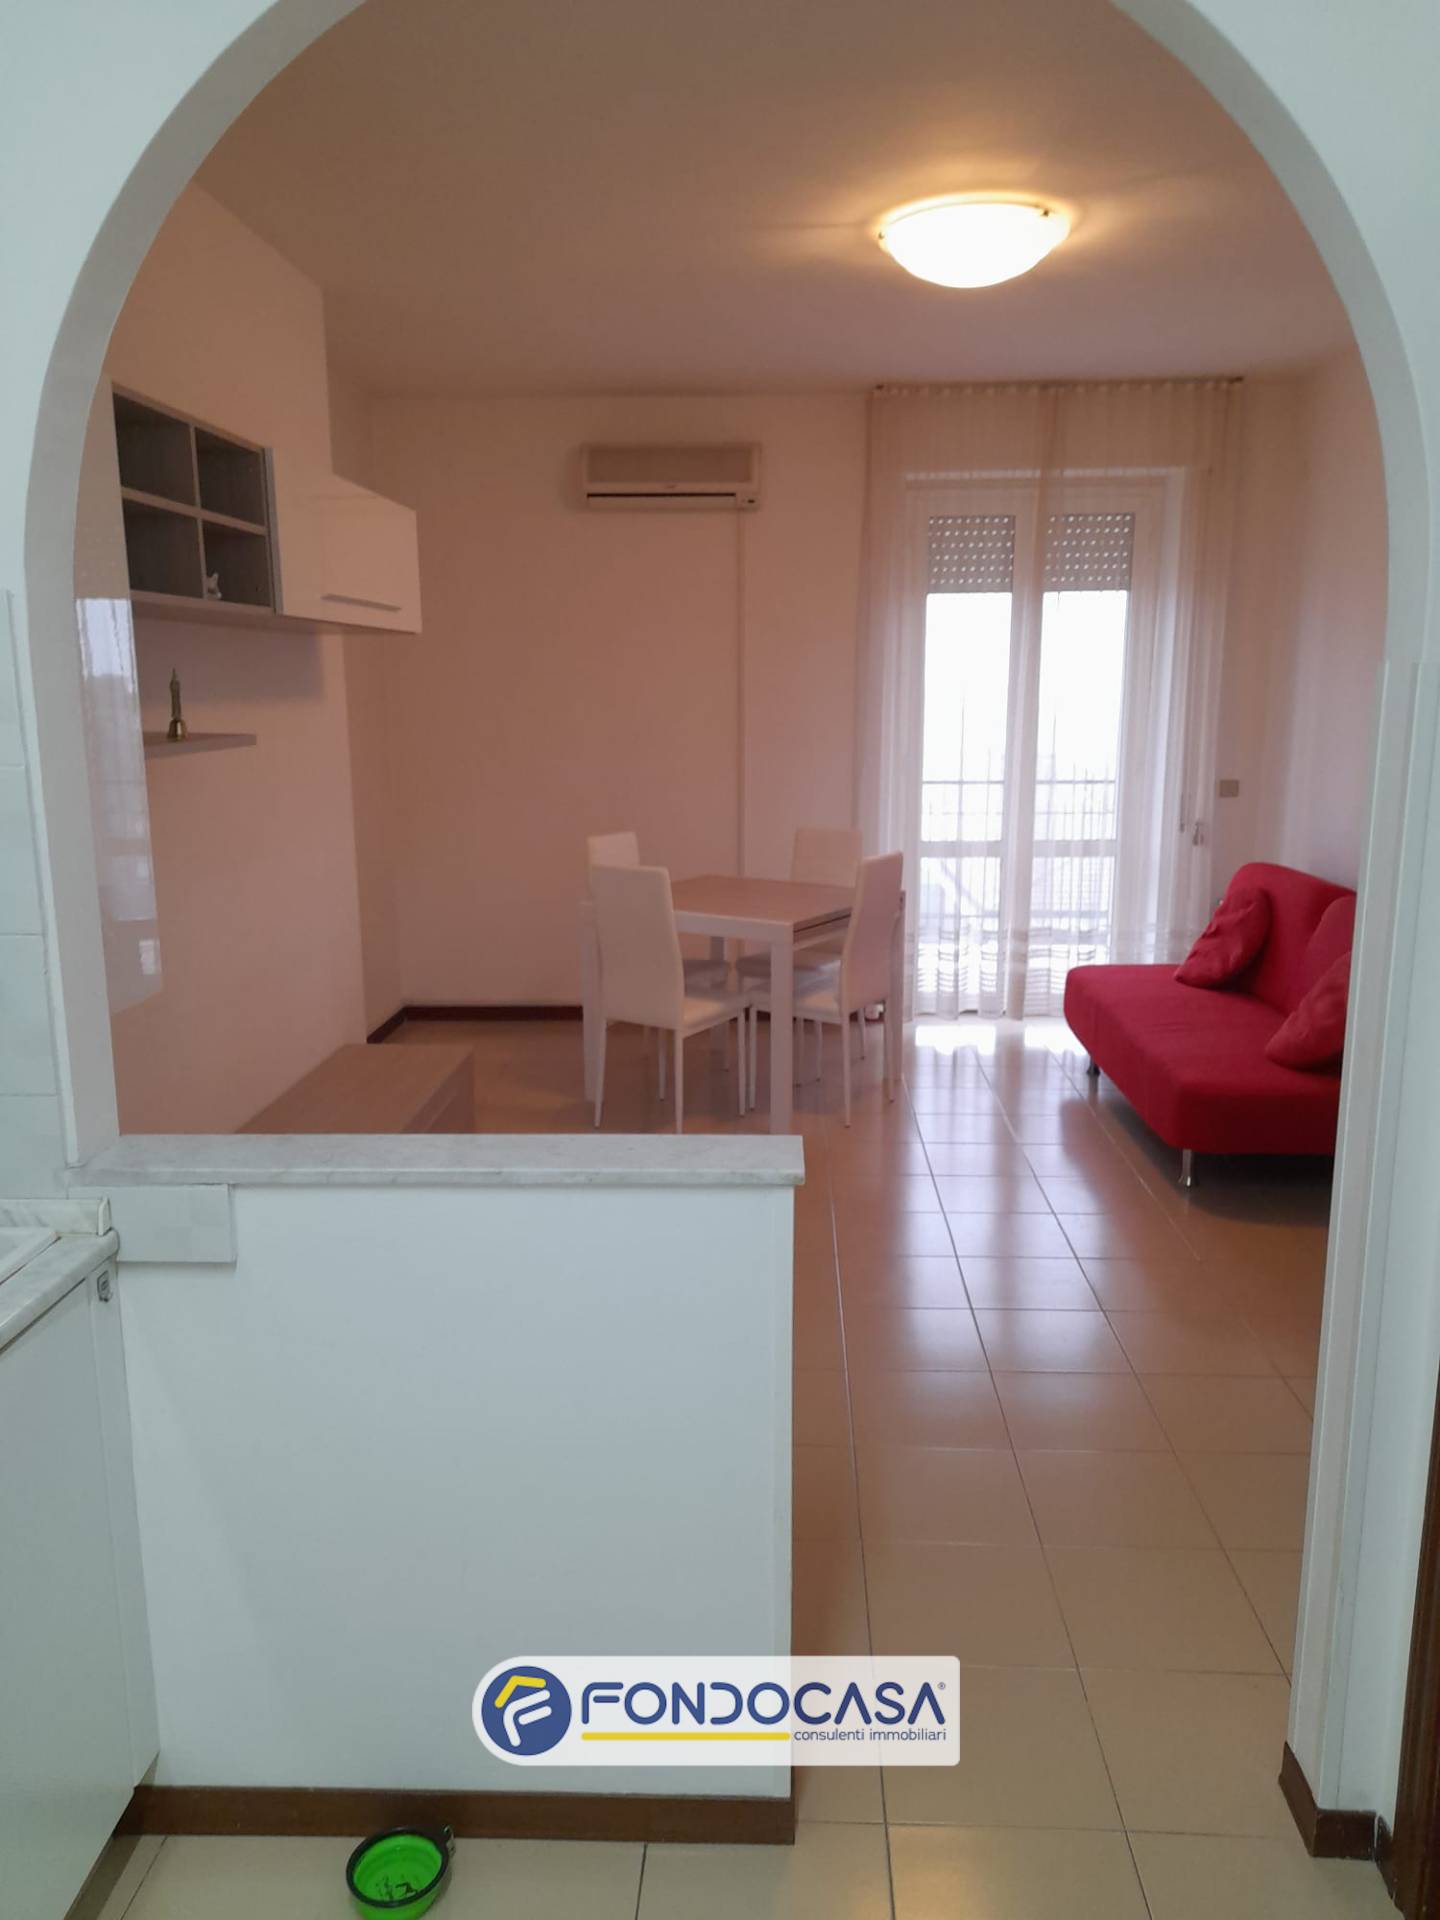 Appartamento in affitto a San Benedetto del Tronto, 5 locali, zona Località: PortodAscoli, prezzo € 1.500 | PortaleAgenzieImmobiliari.it